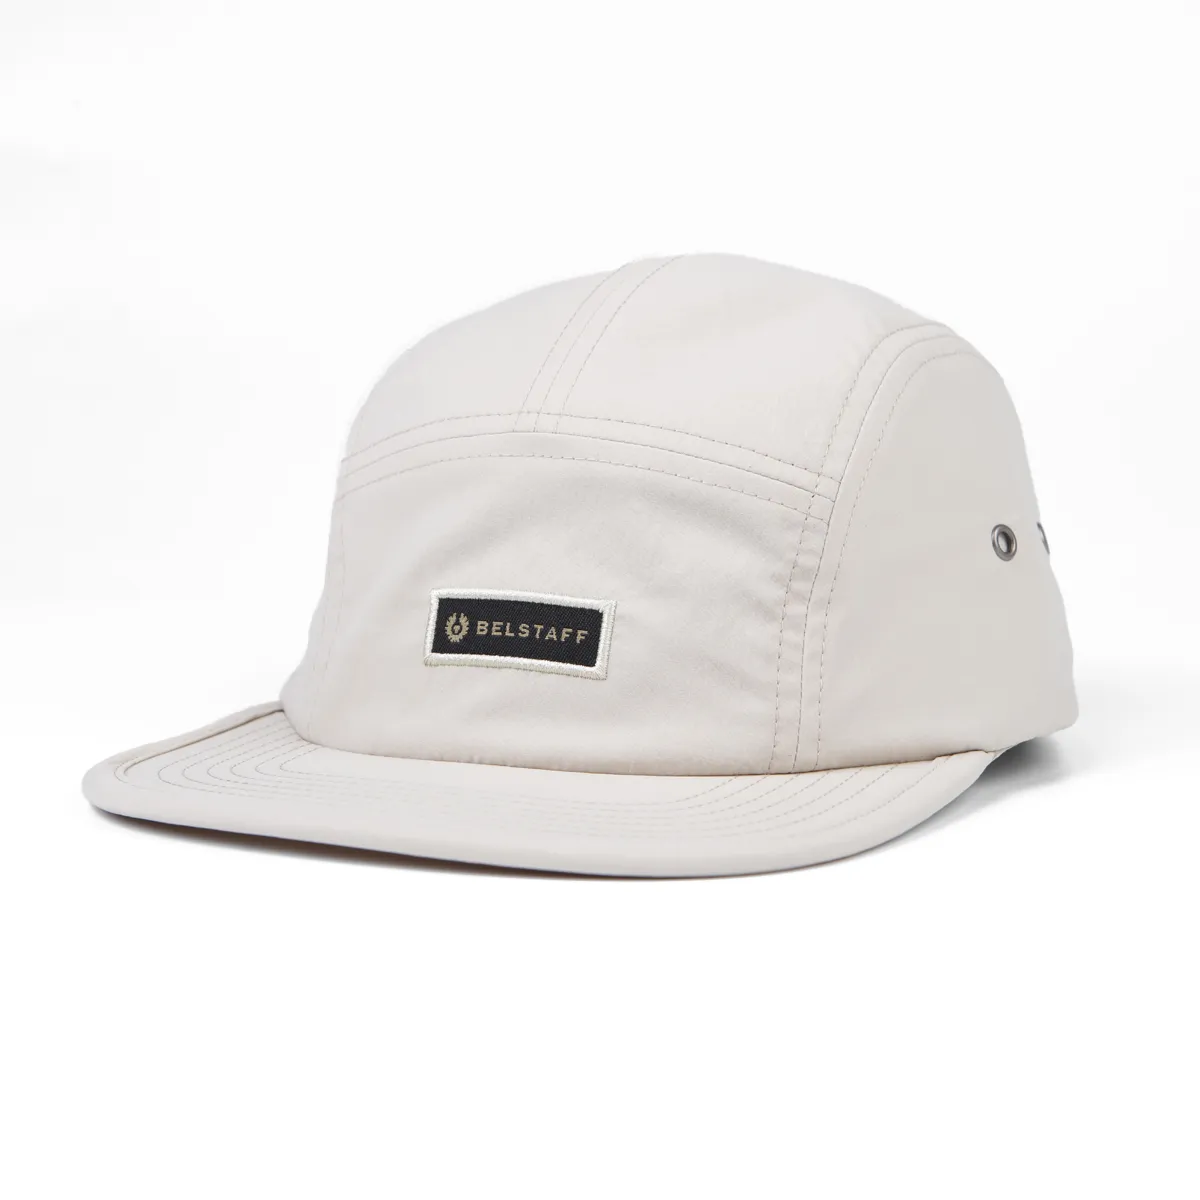 white camper cap